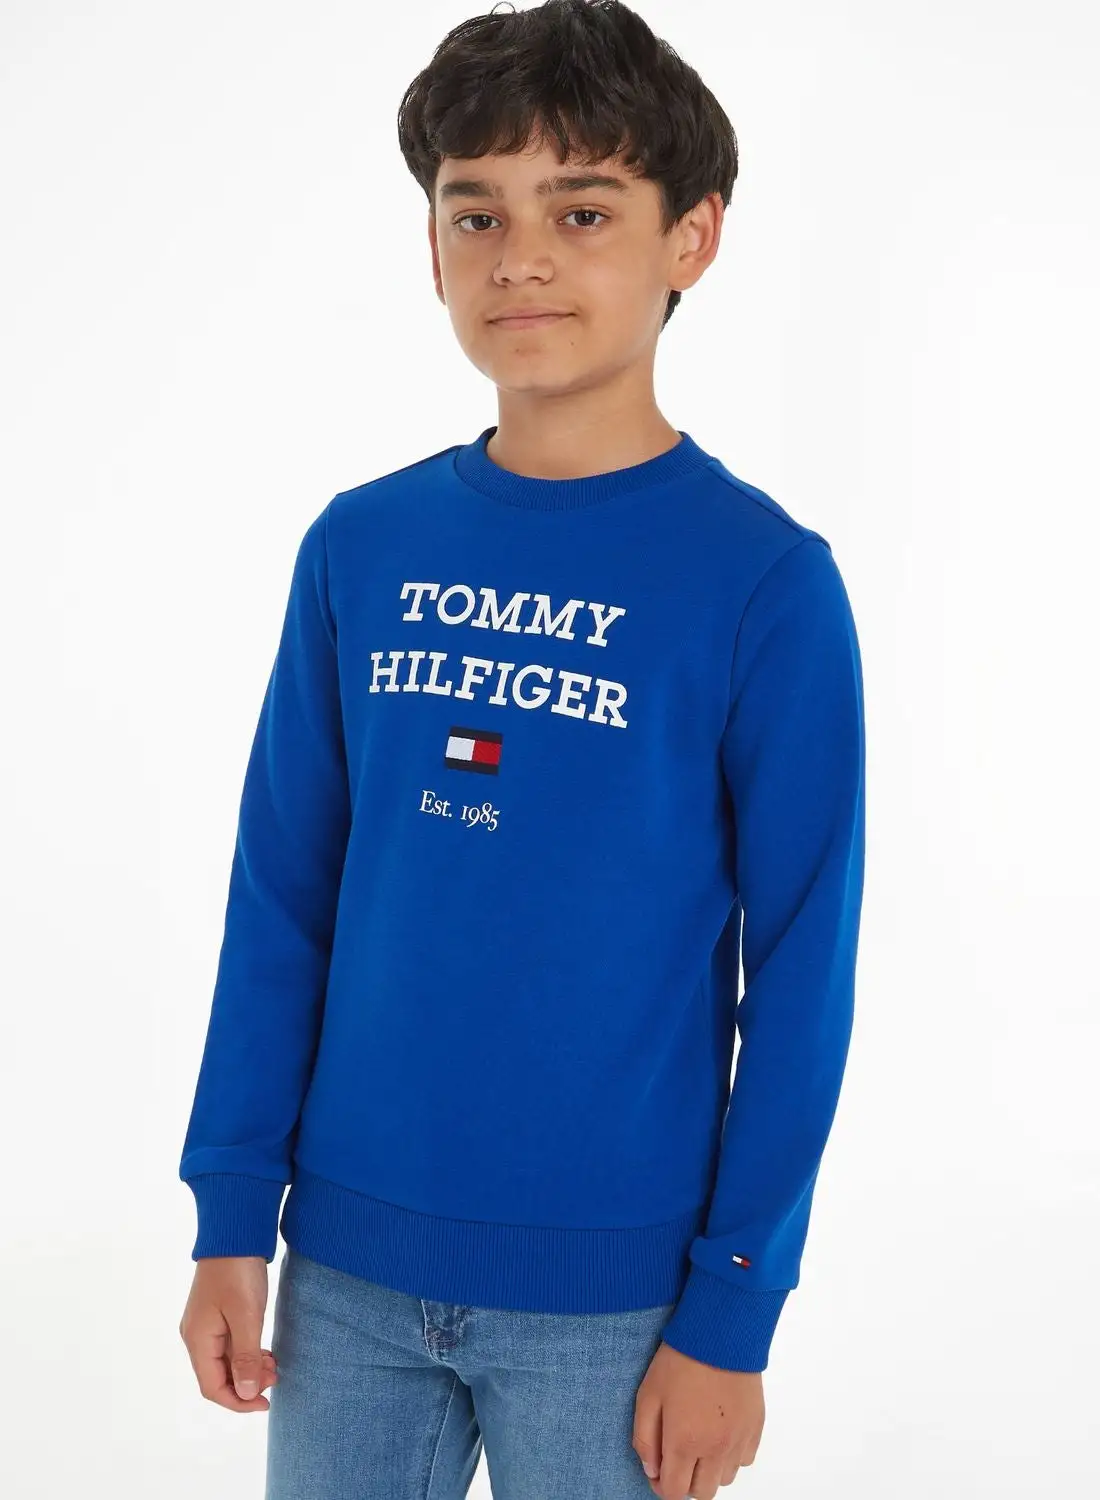 سويت شيرت بشعار تومي هيلفيغر للأطفال